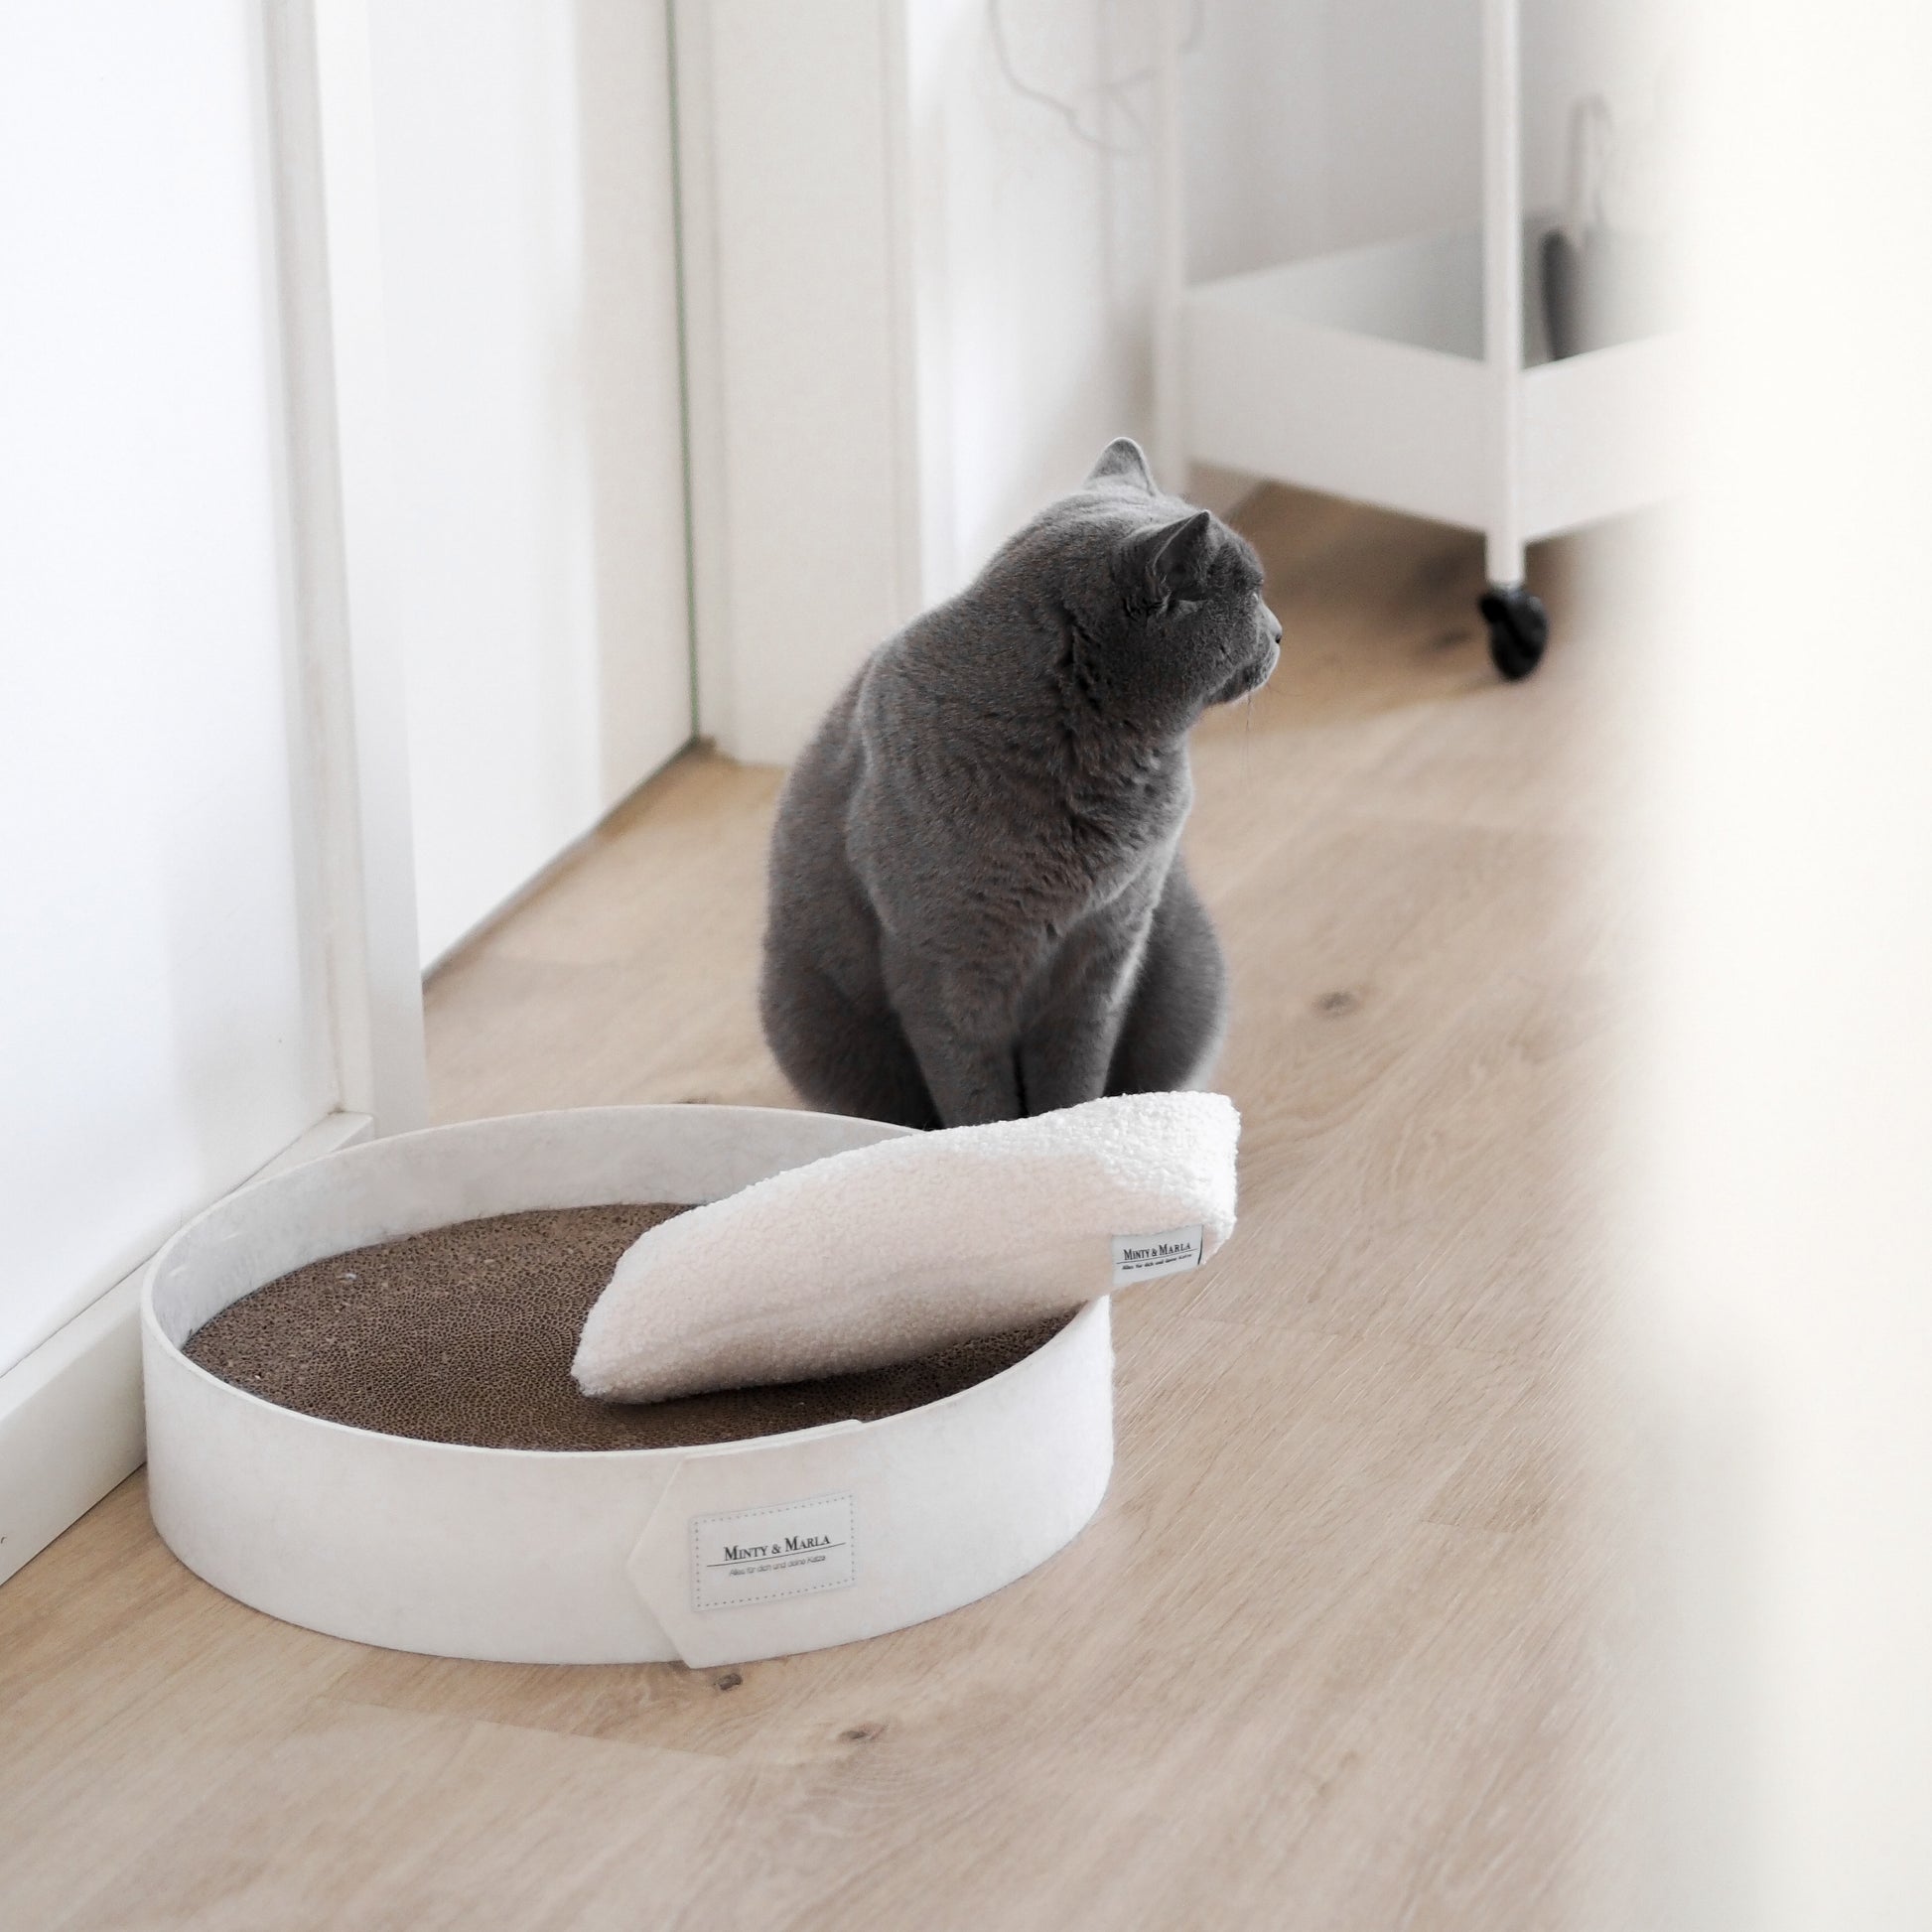 Eine Katze sitzt neben einem schönen Kratzbrett für Katzen in einer modernen Wohnung.